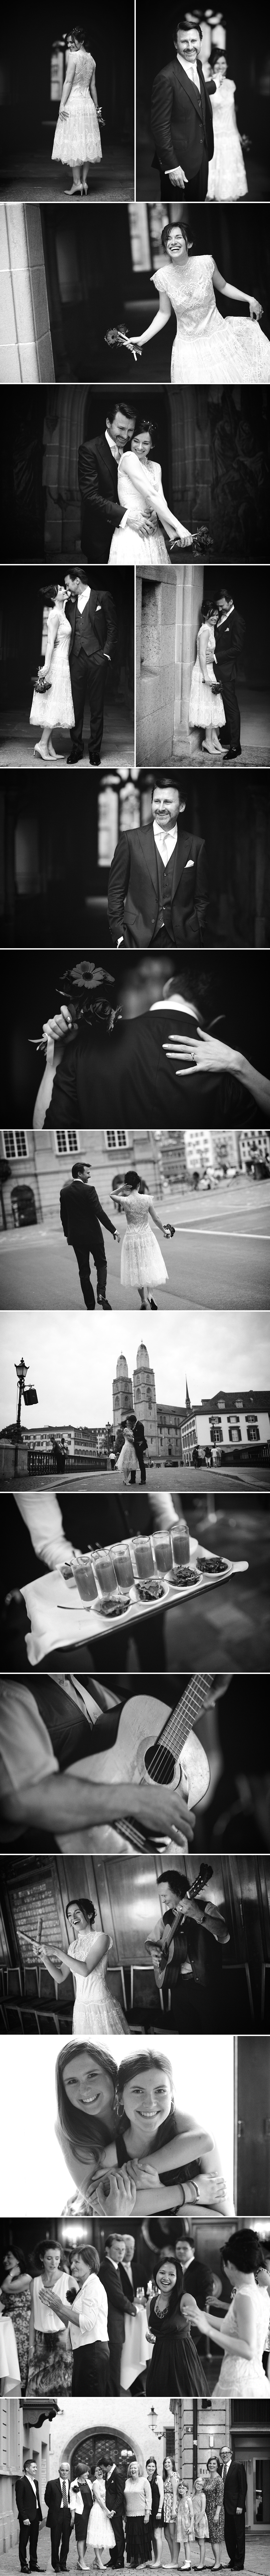 wedding in black and white_Zurich